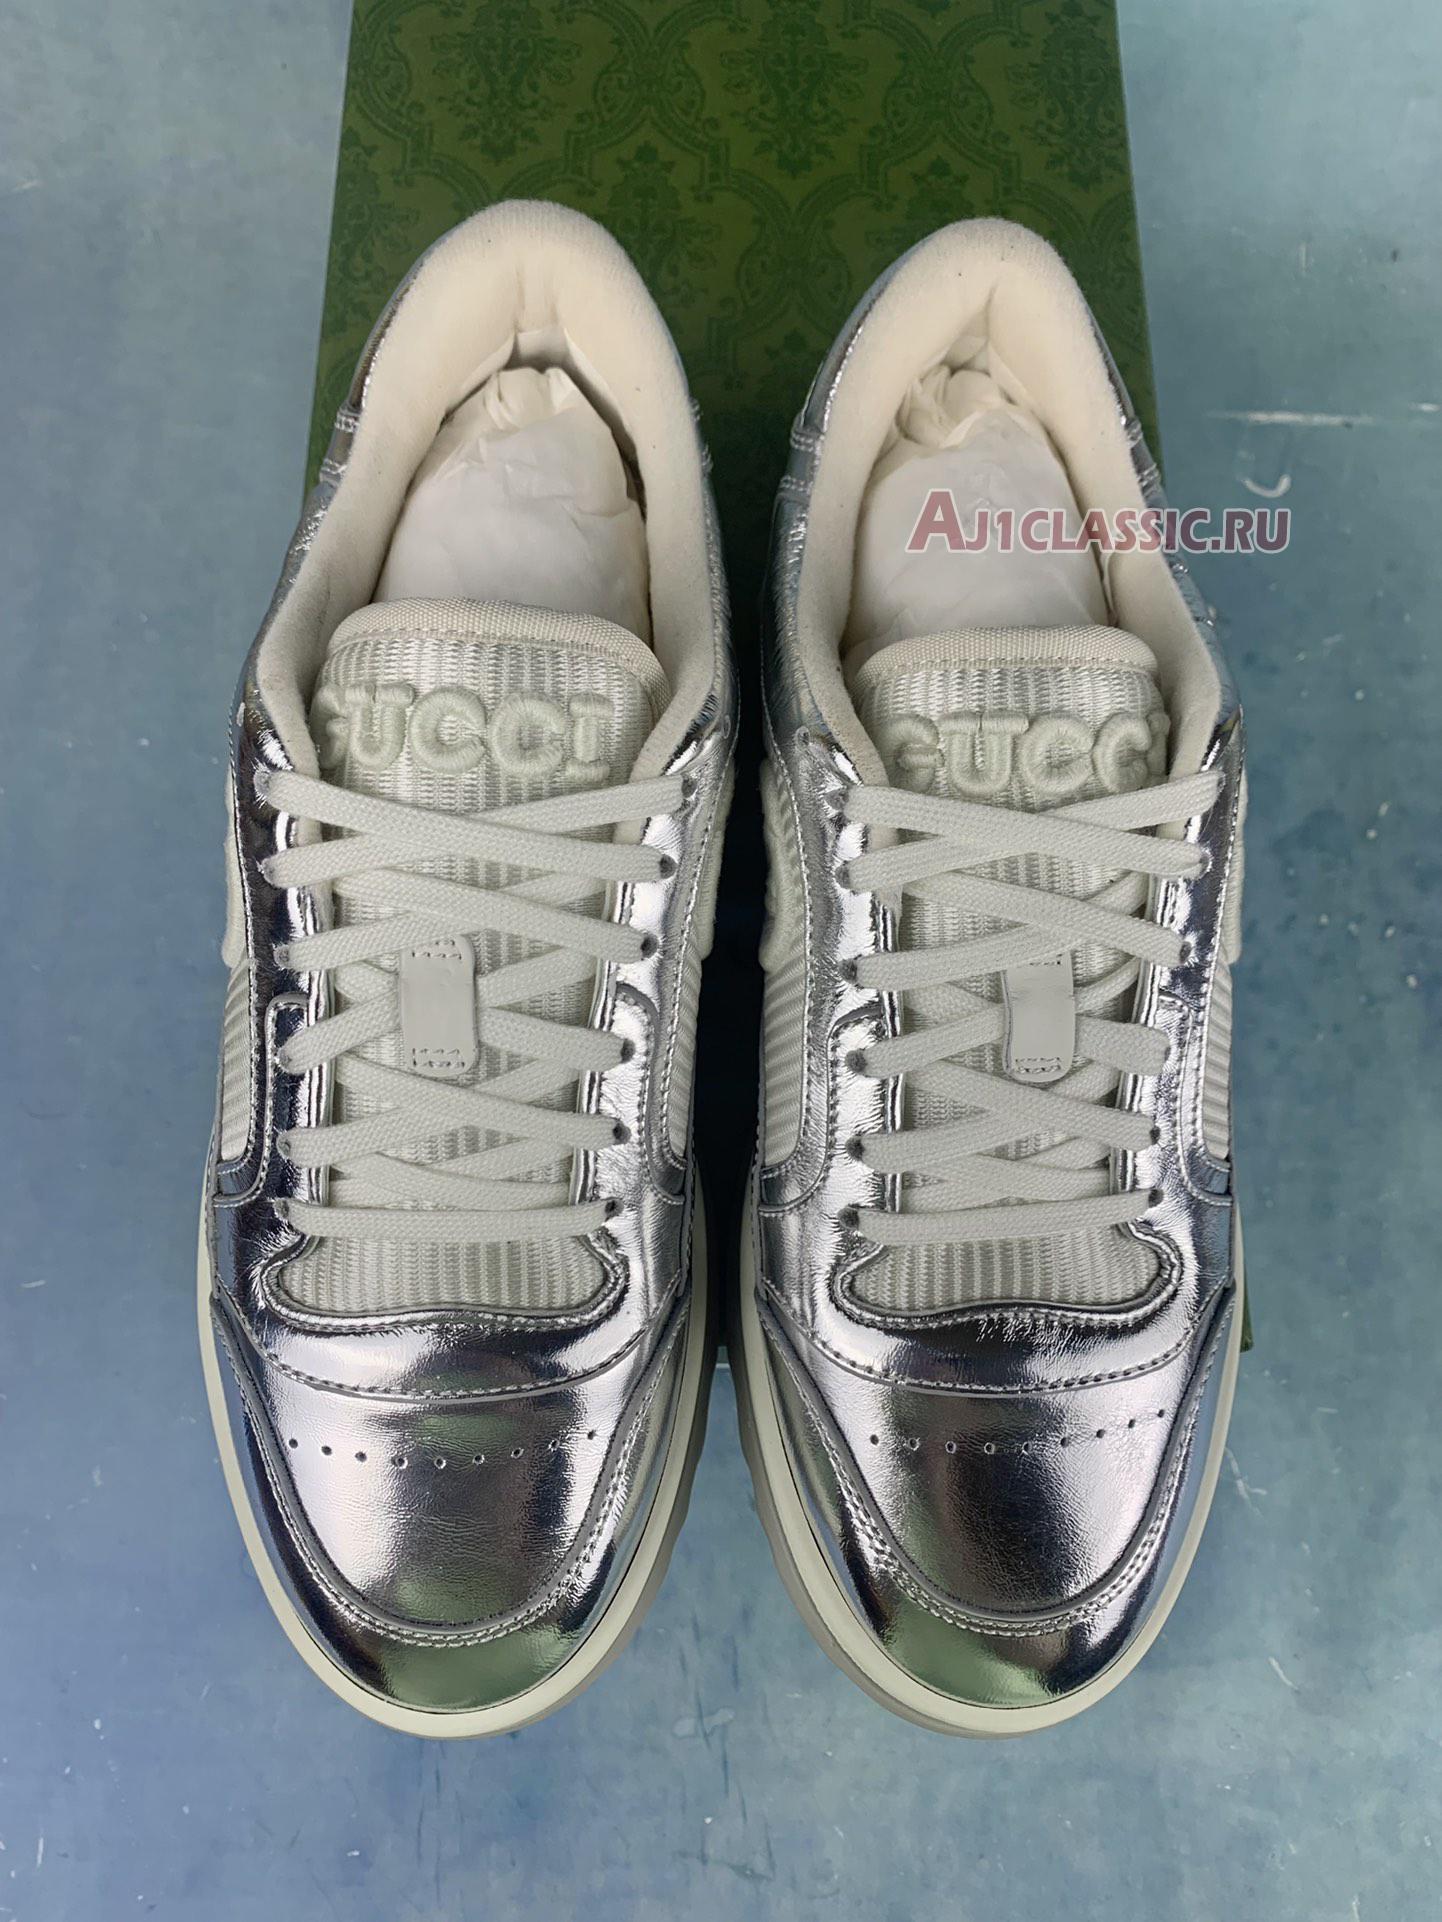 Gucci MAC80 Sneaker "Metallic Silver" 750834 AACA9 8141